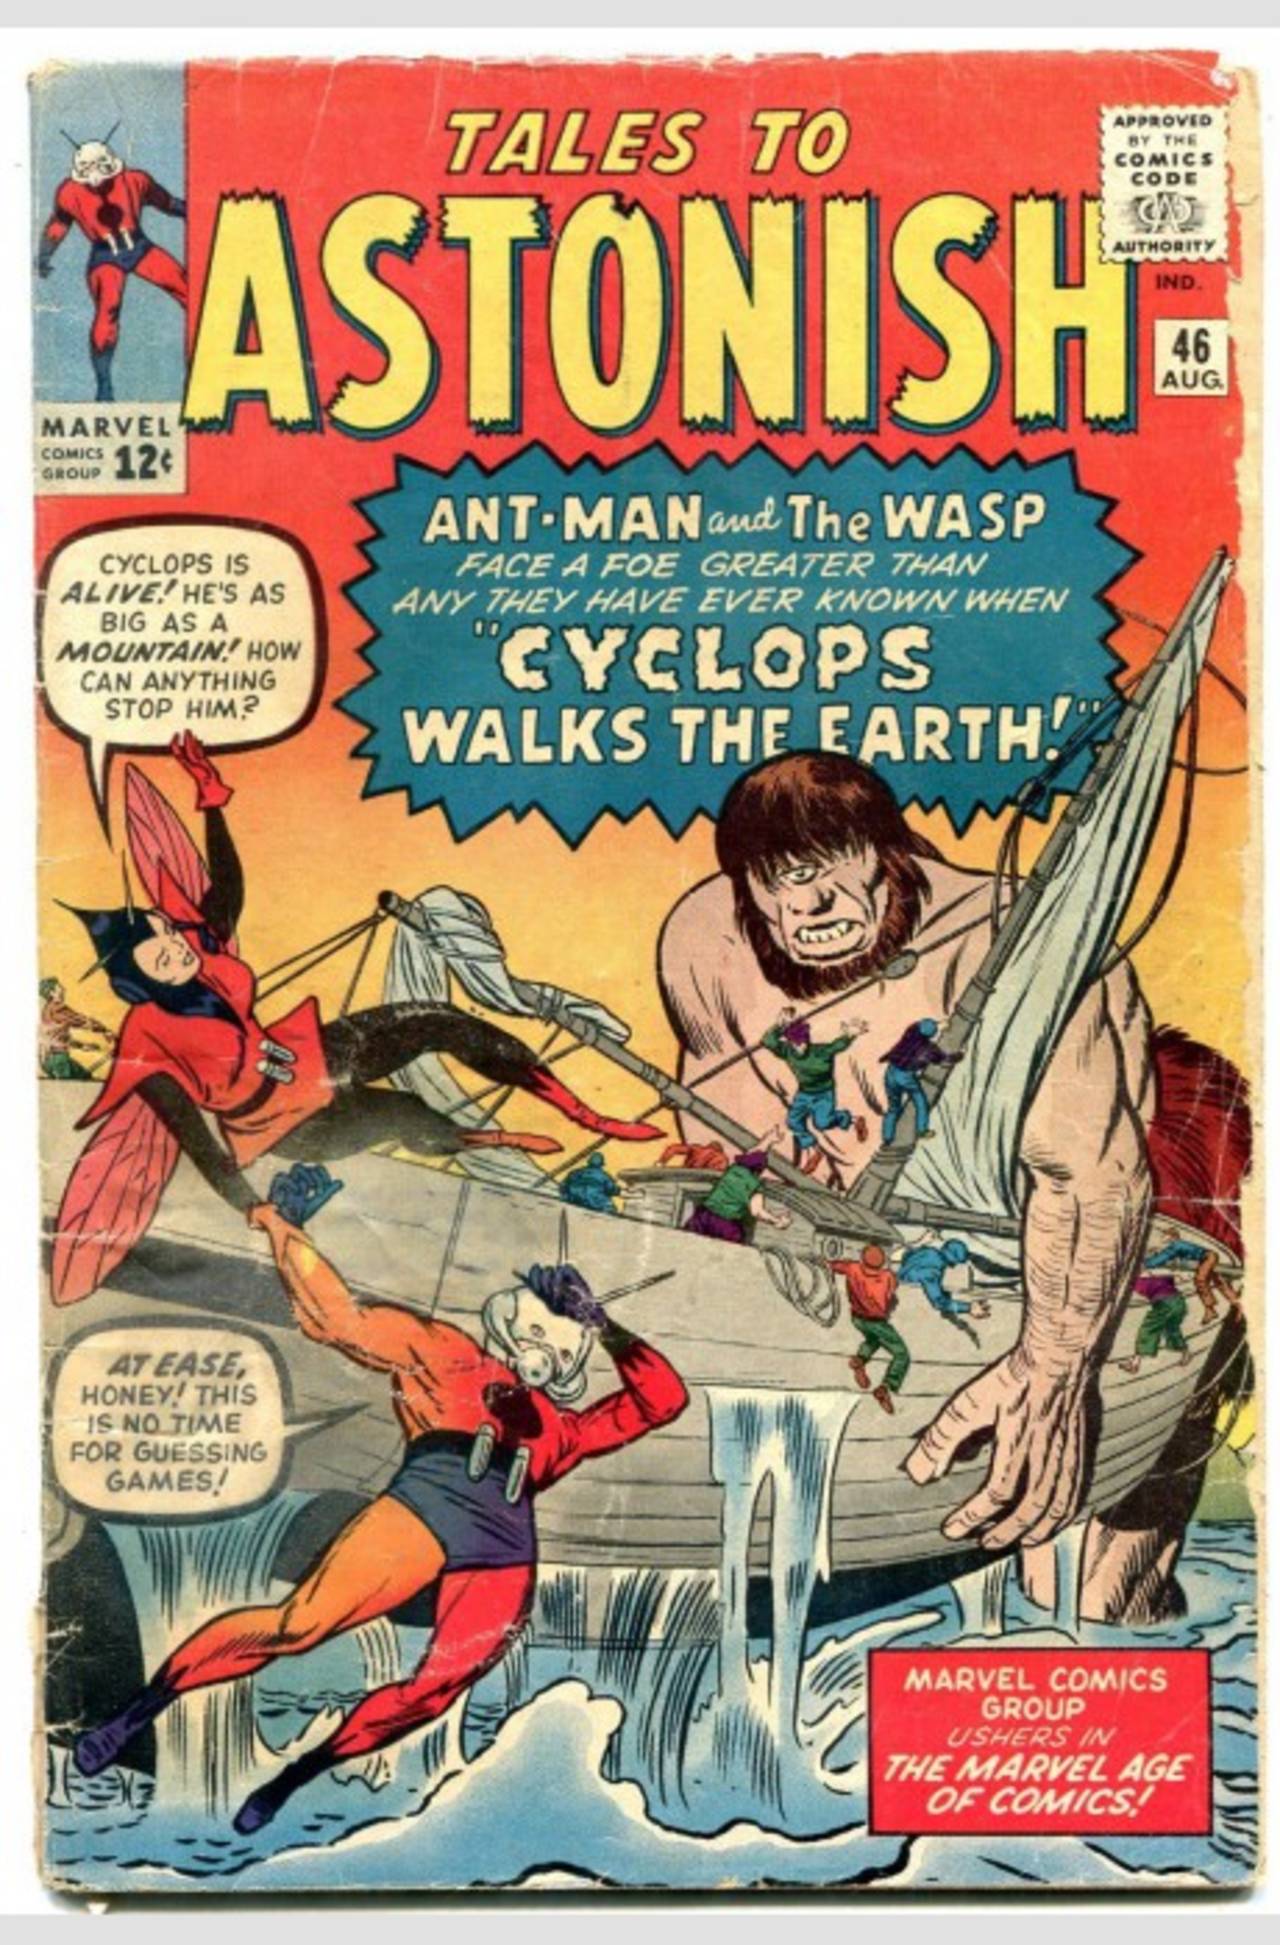 'Hombre Hormiga' y 'Avispa' pelearon juntos por primera vez en los cómics en 1963. 